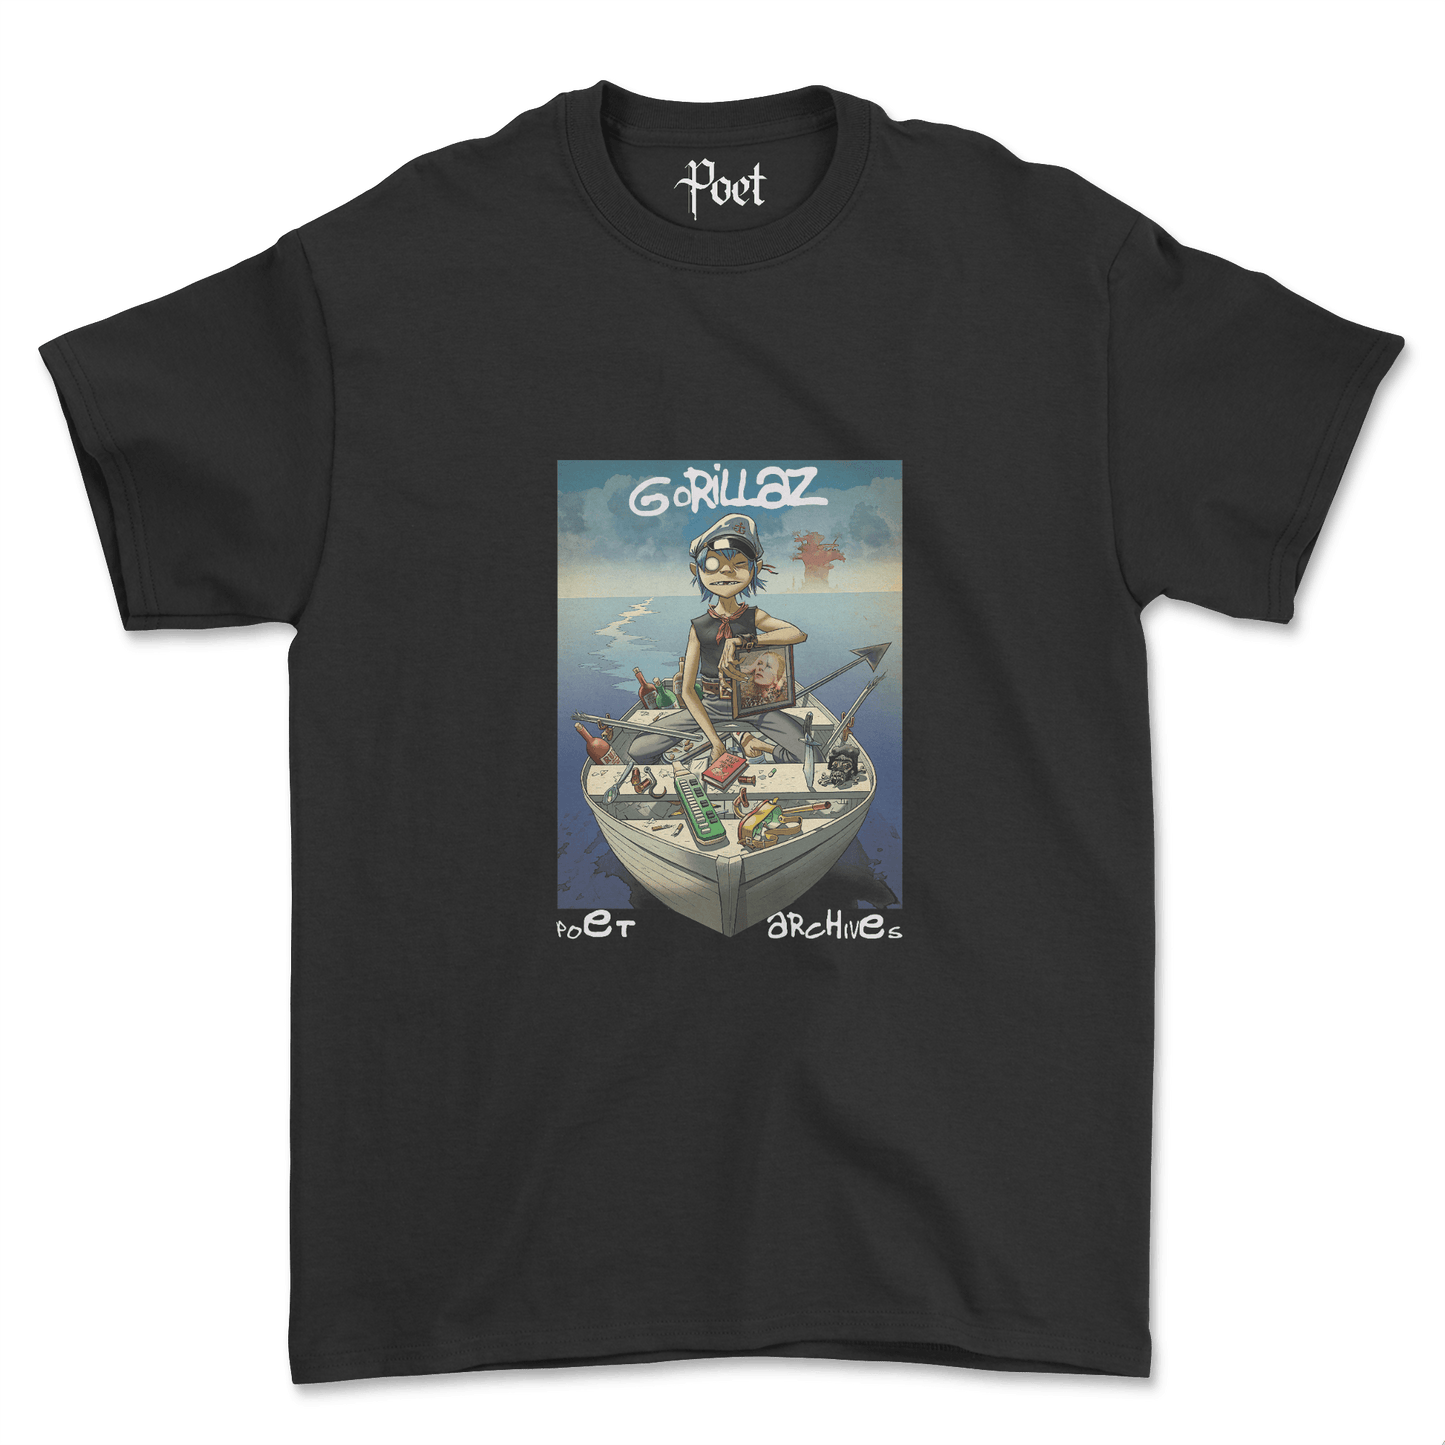 Gorillaz 2-D T-Shirt - Poet Archives